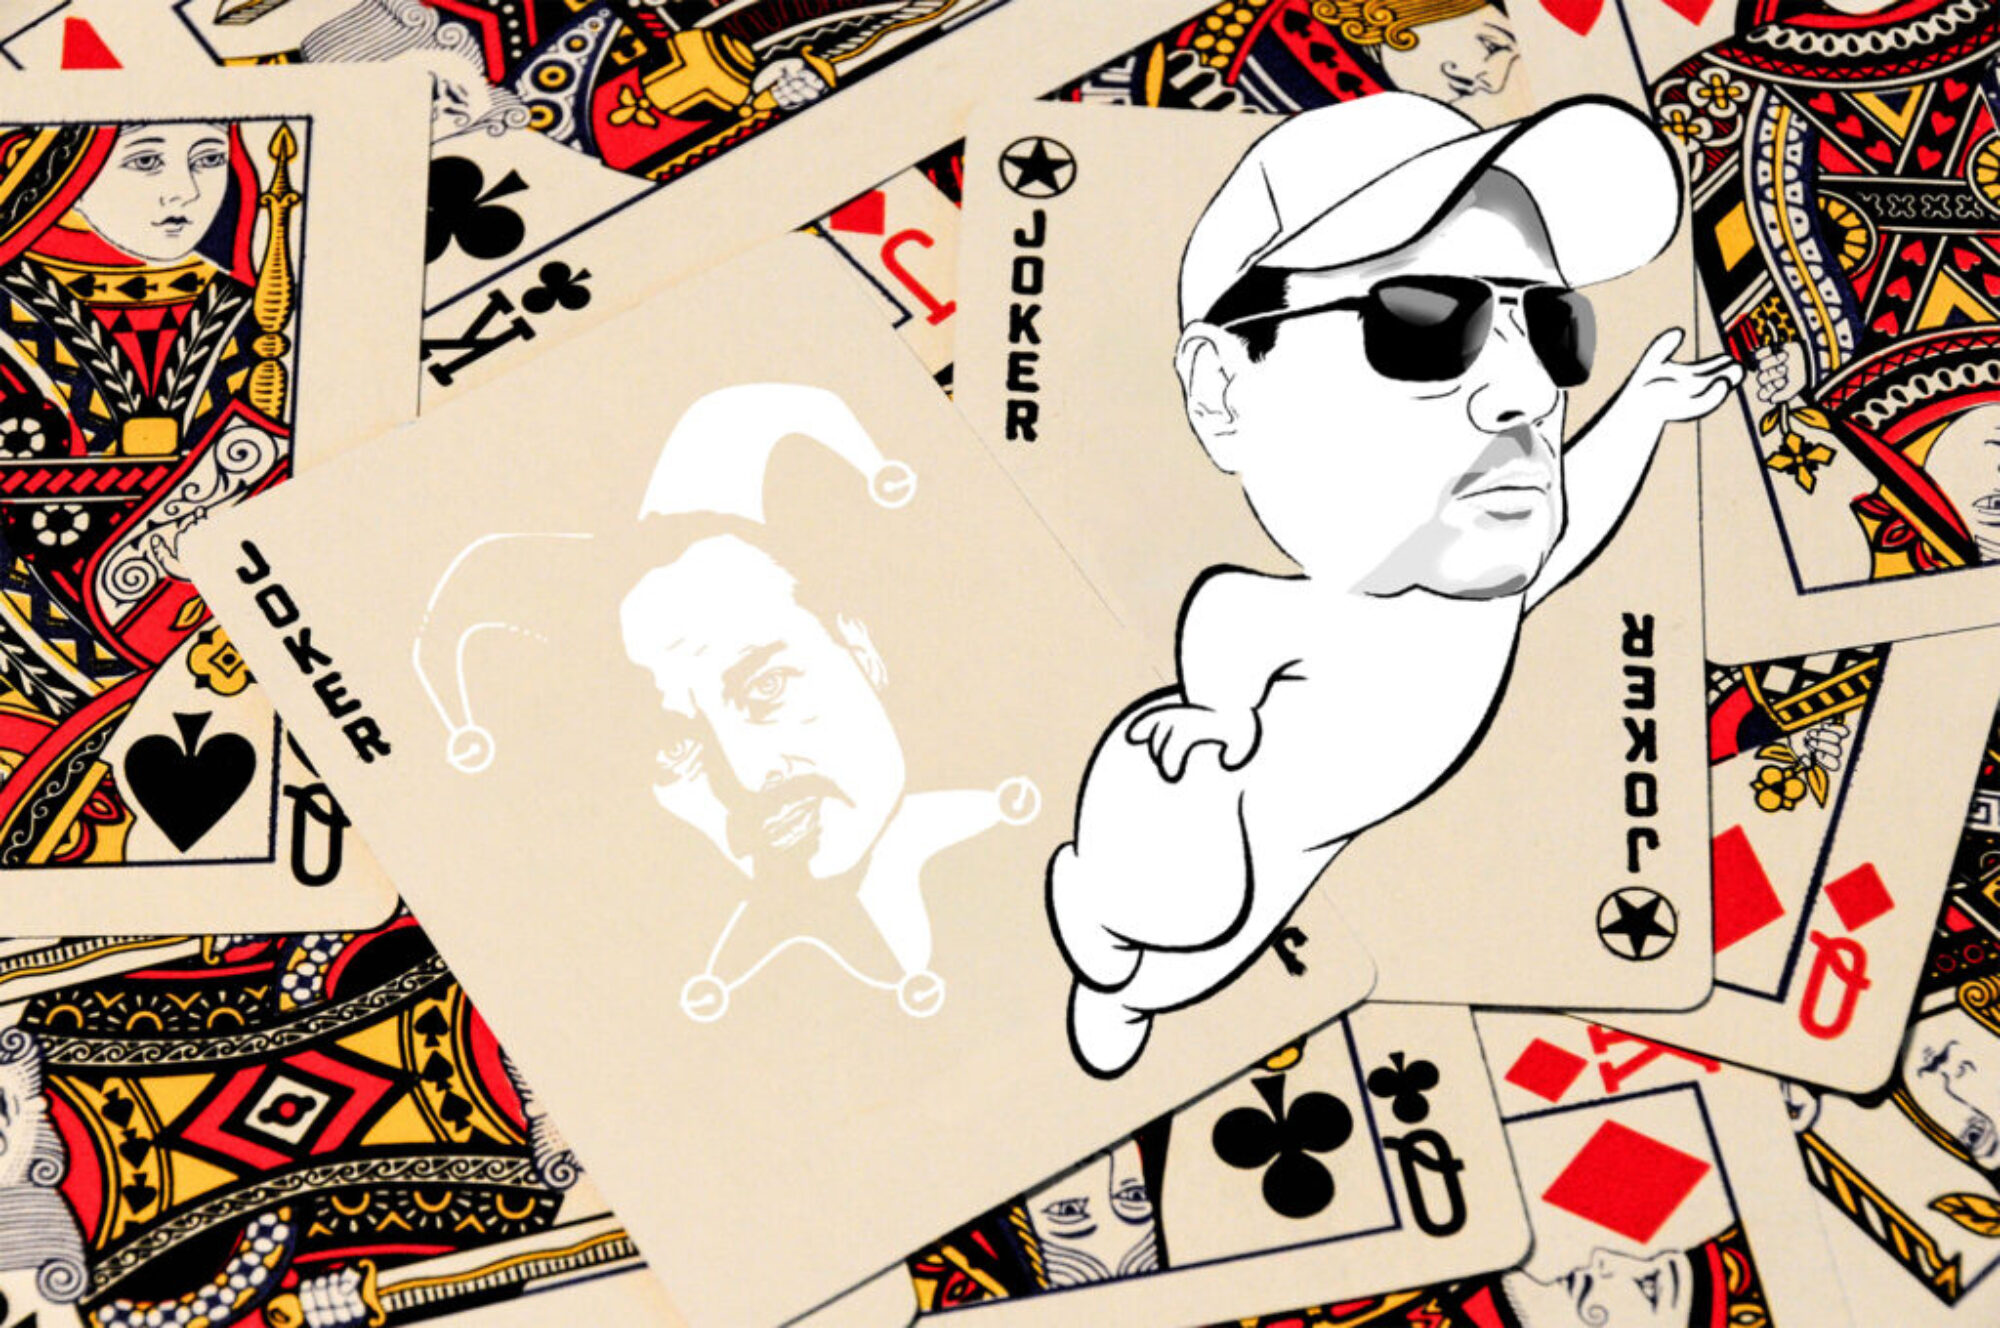 Playing Cards Jokercasper by ImageCasper